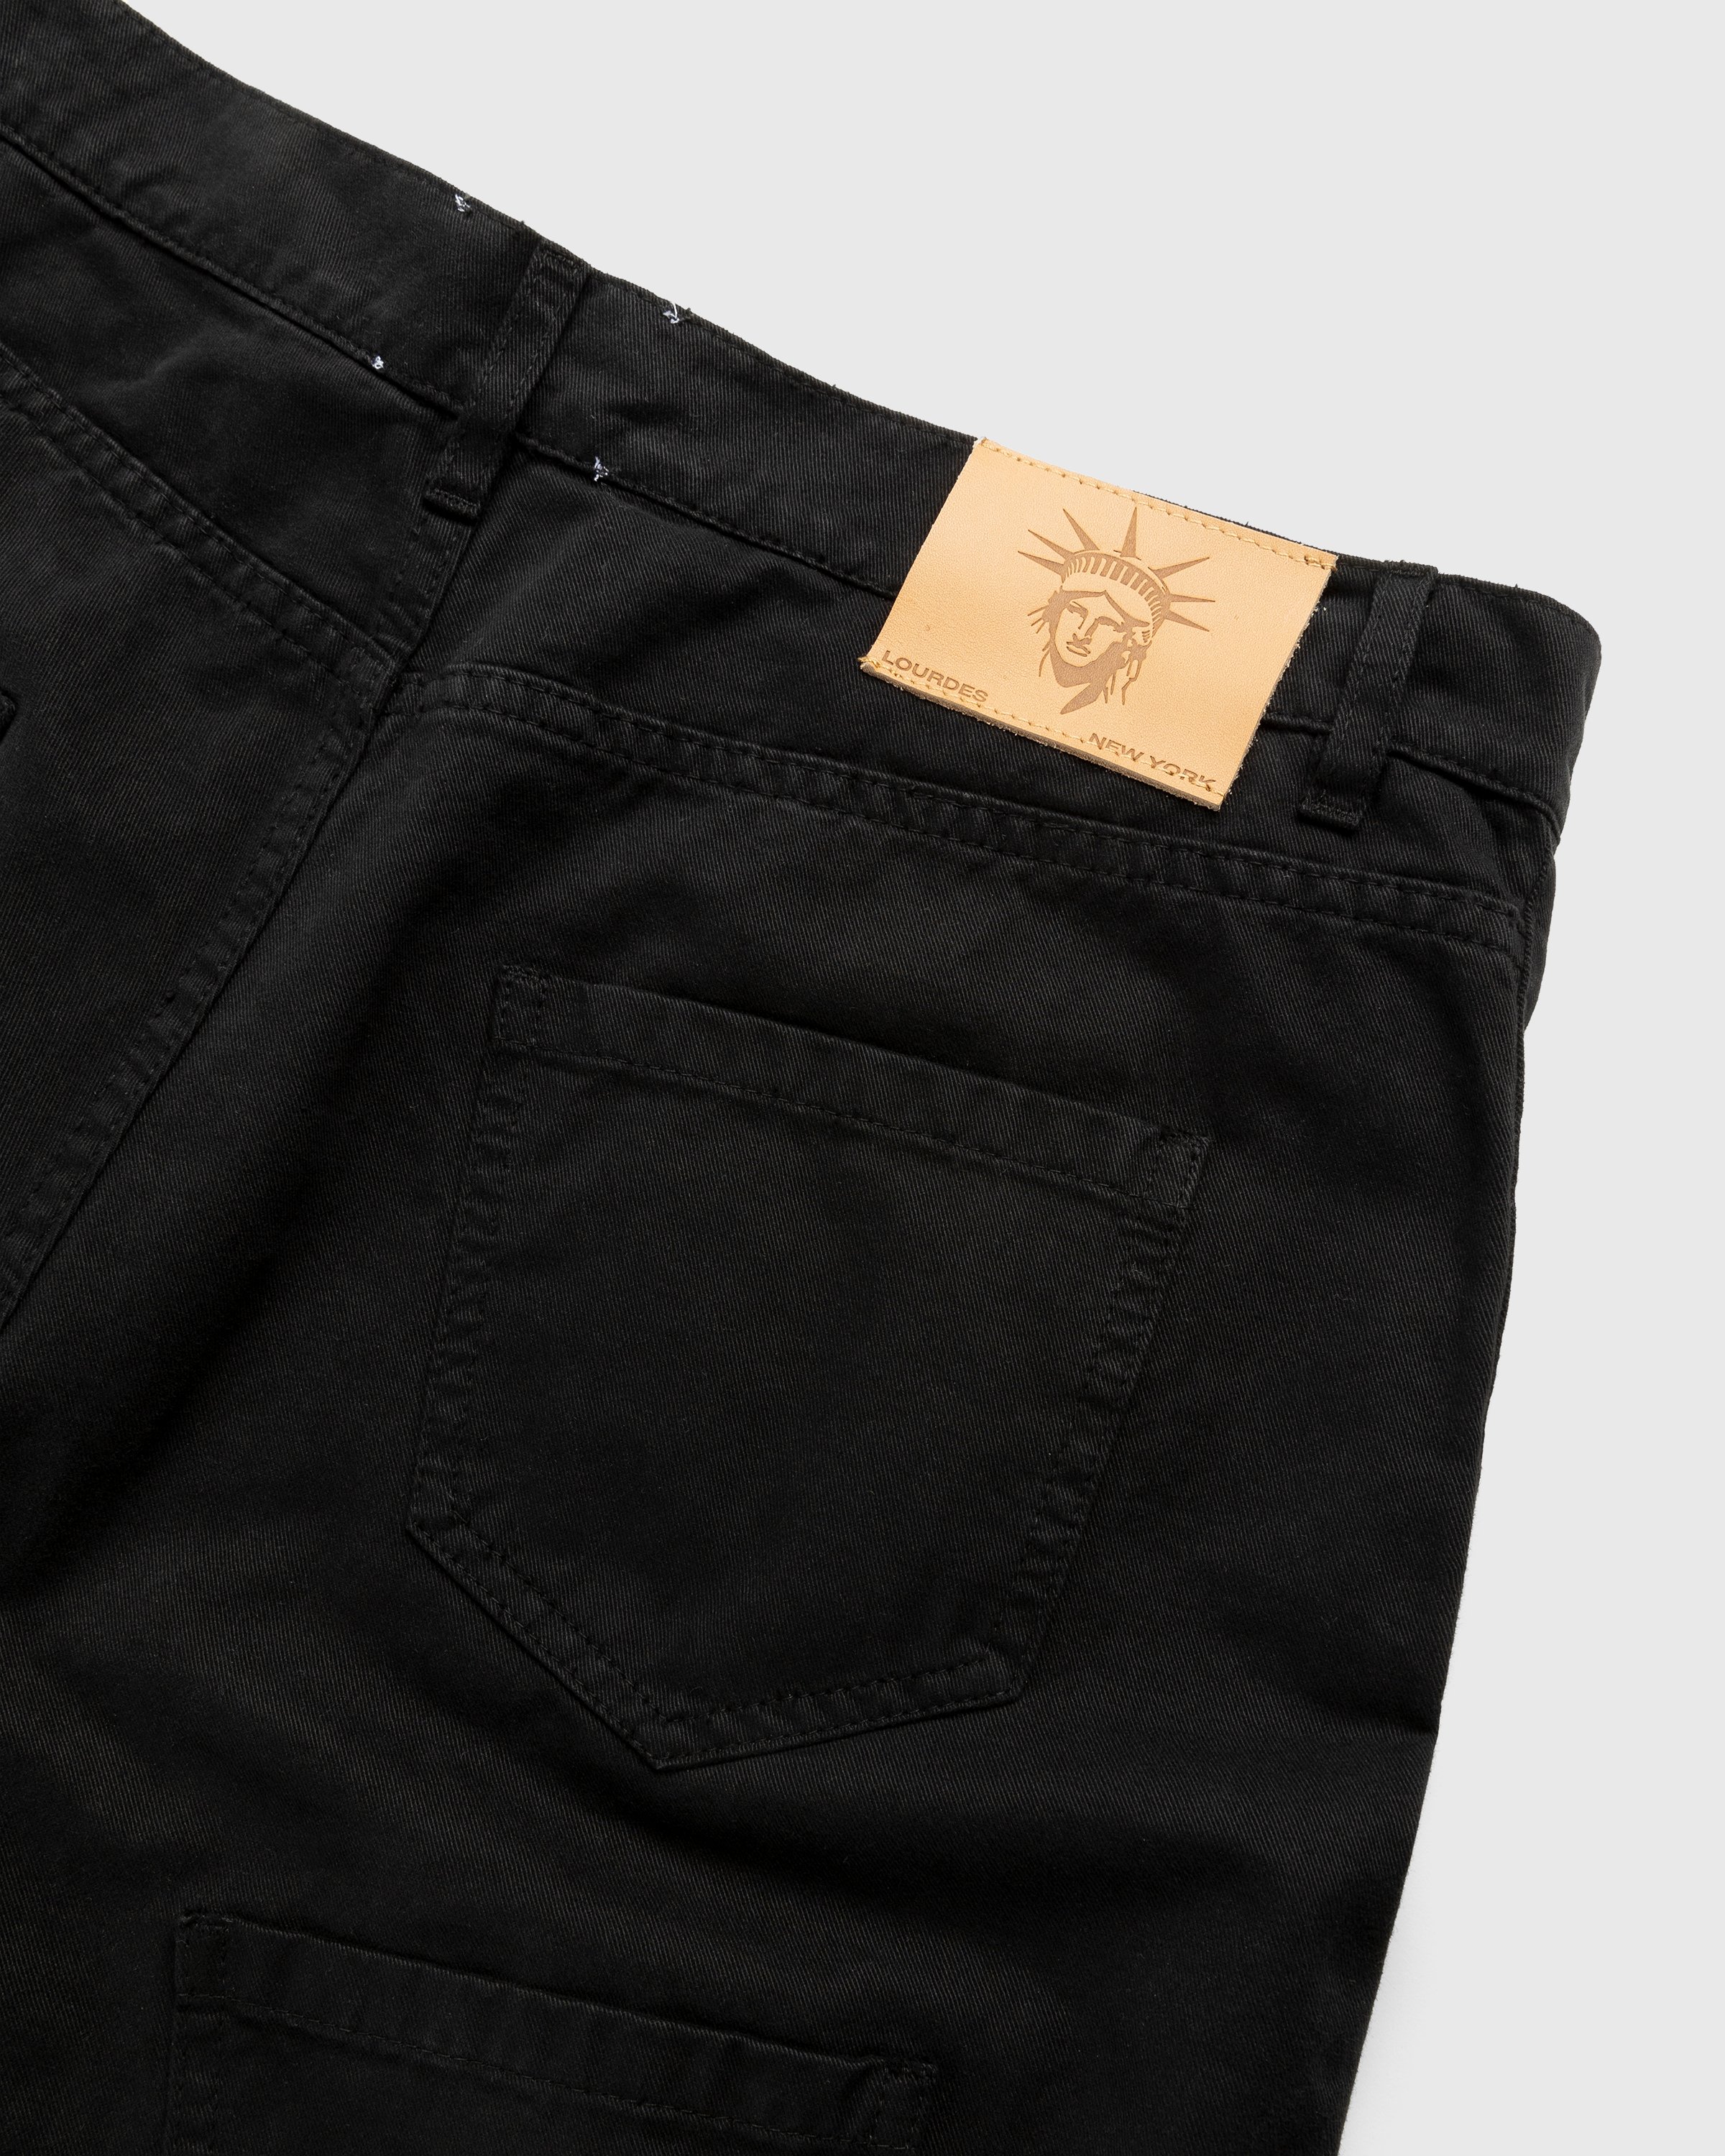 Lourdes New York - Multi-Pocket Cargo Short Black - Clothing - Black - Image 5